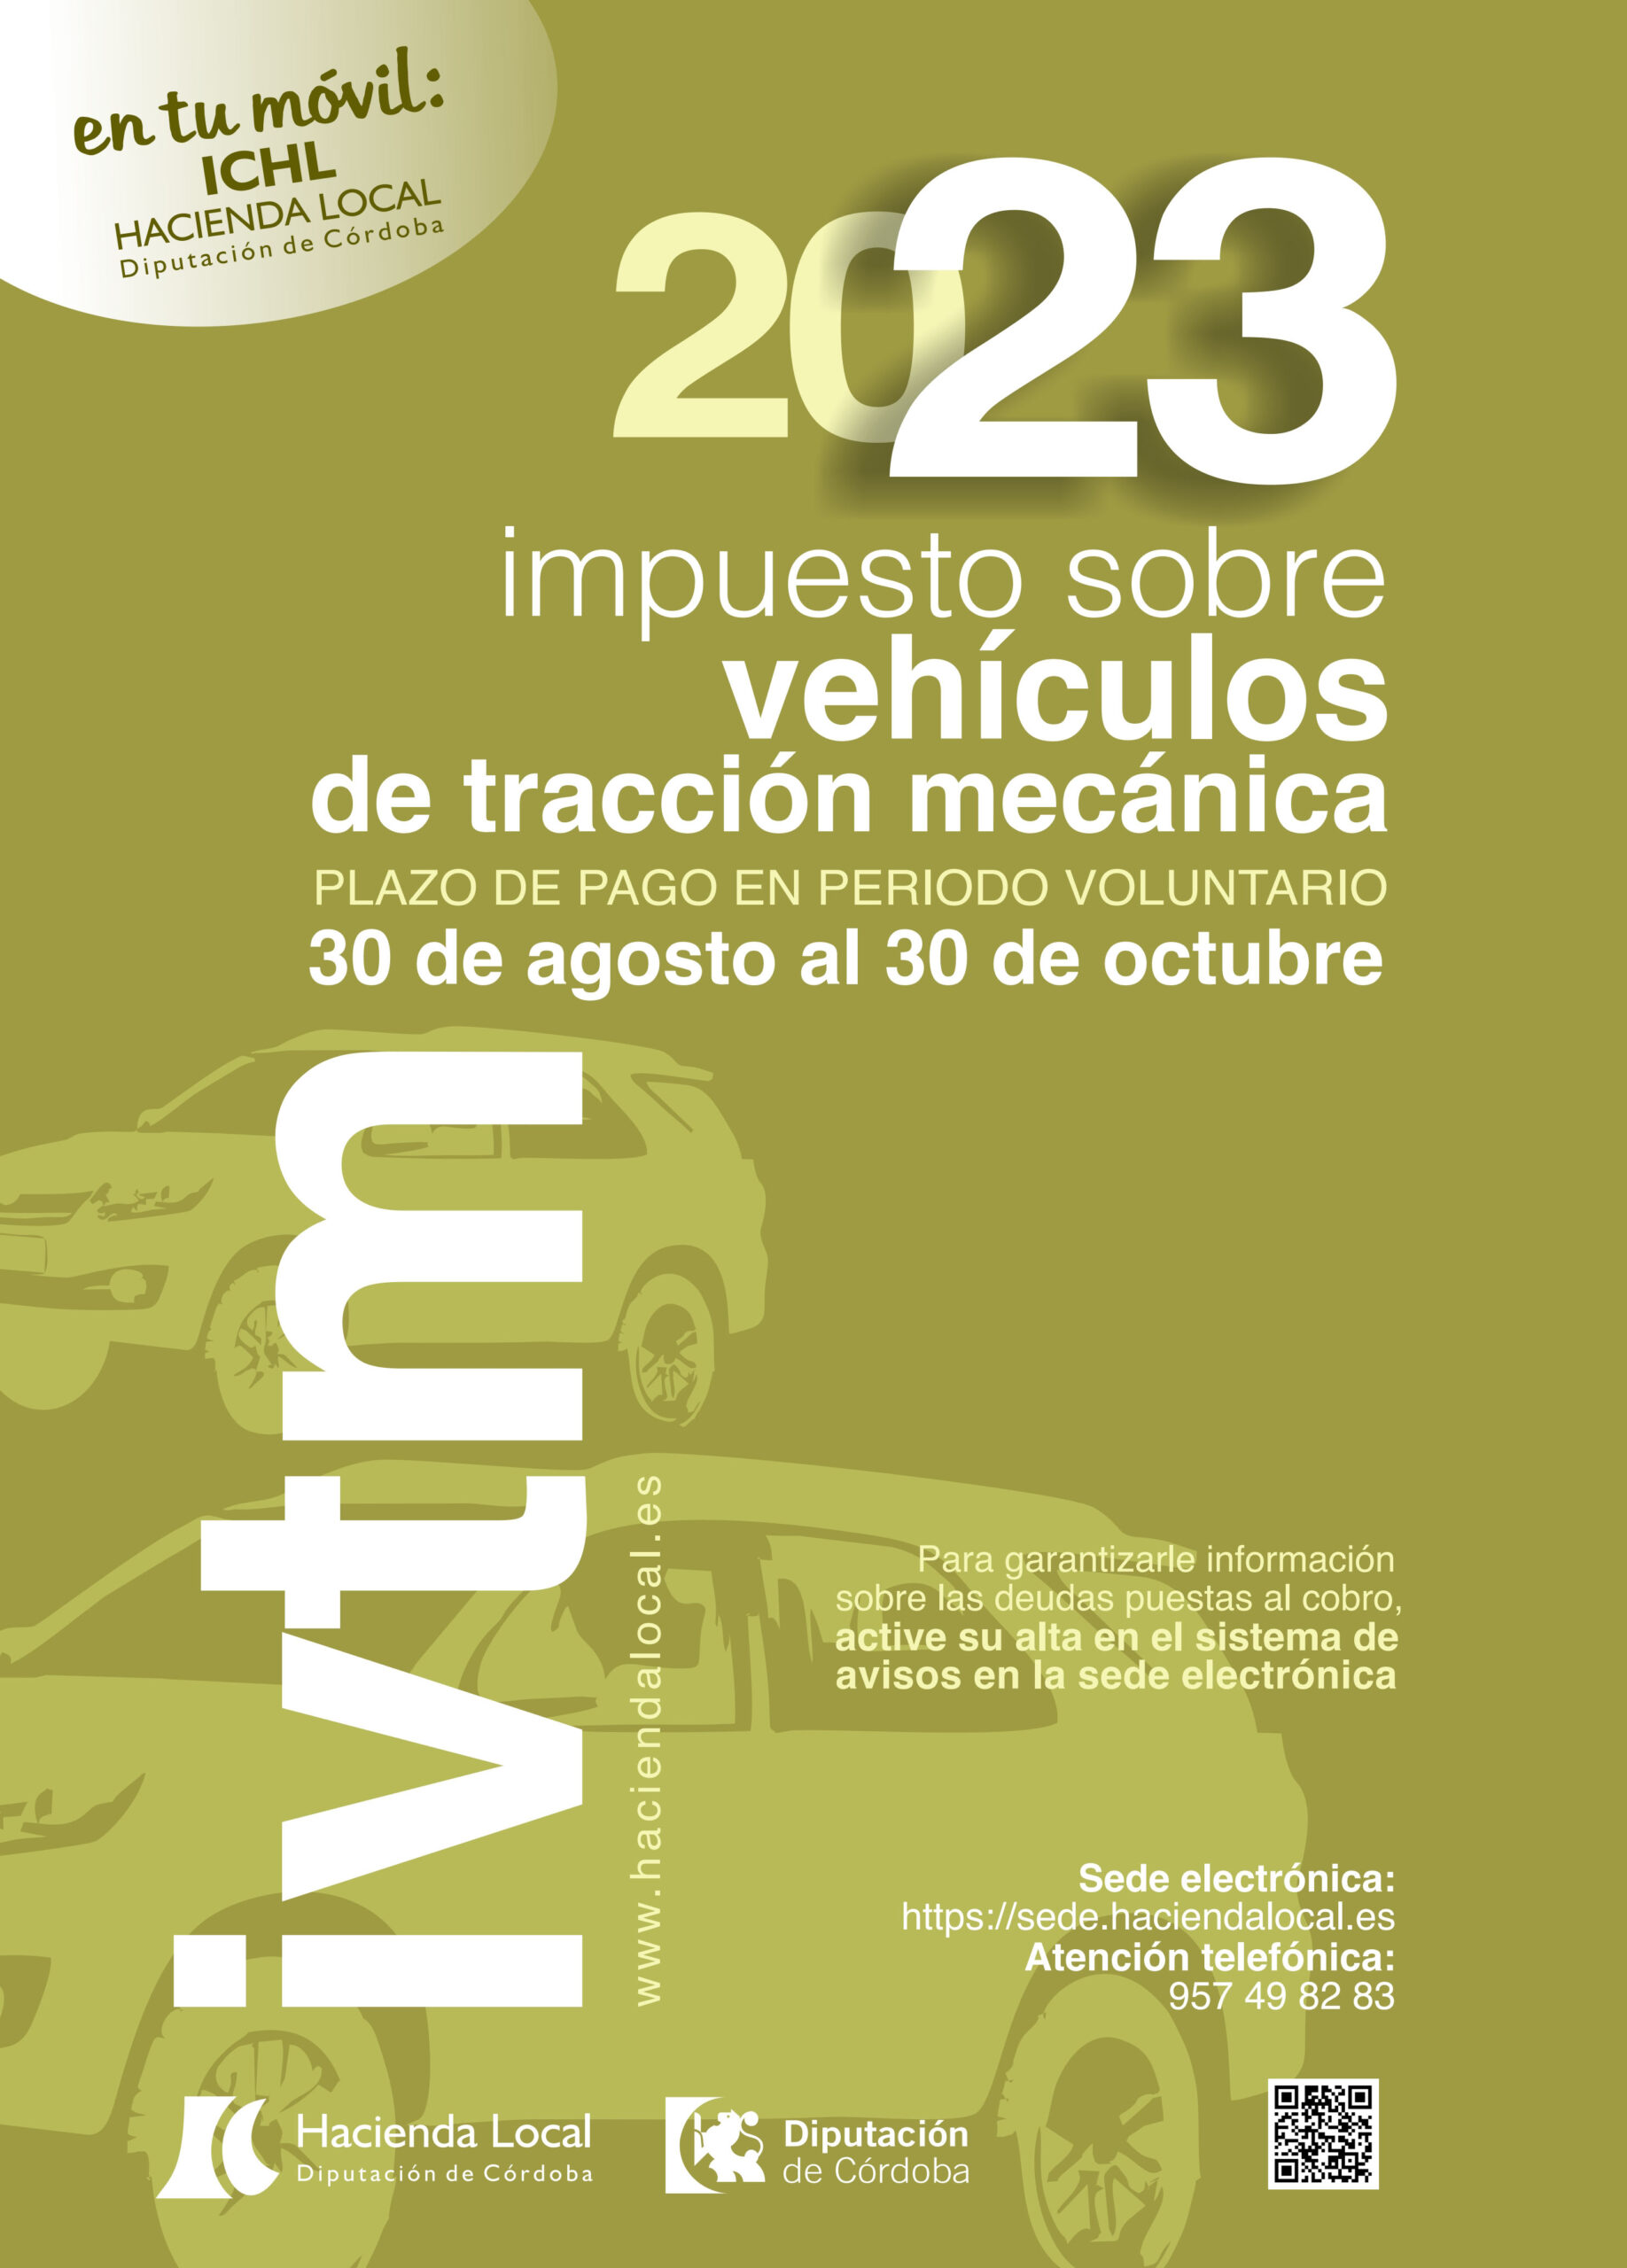 Hacienda Local – Impuesto sobre vehículos de tracción mecánica 2023